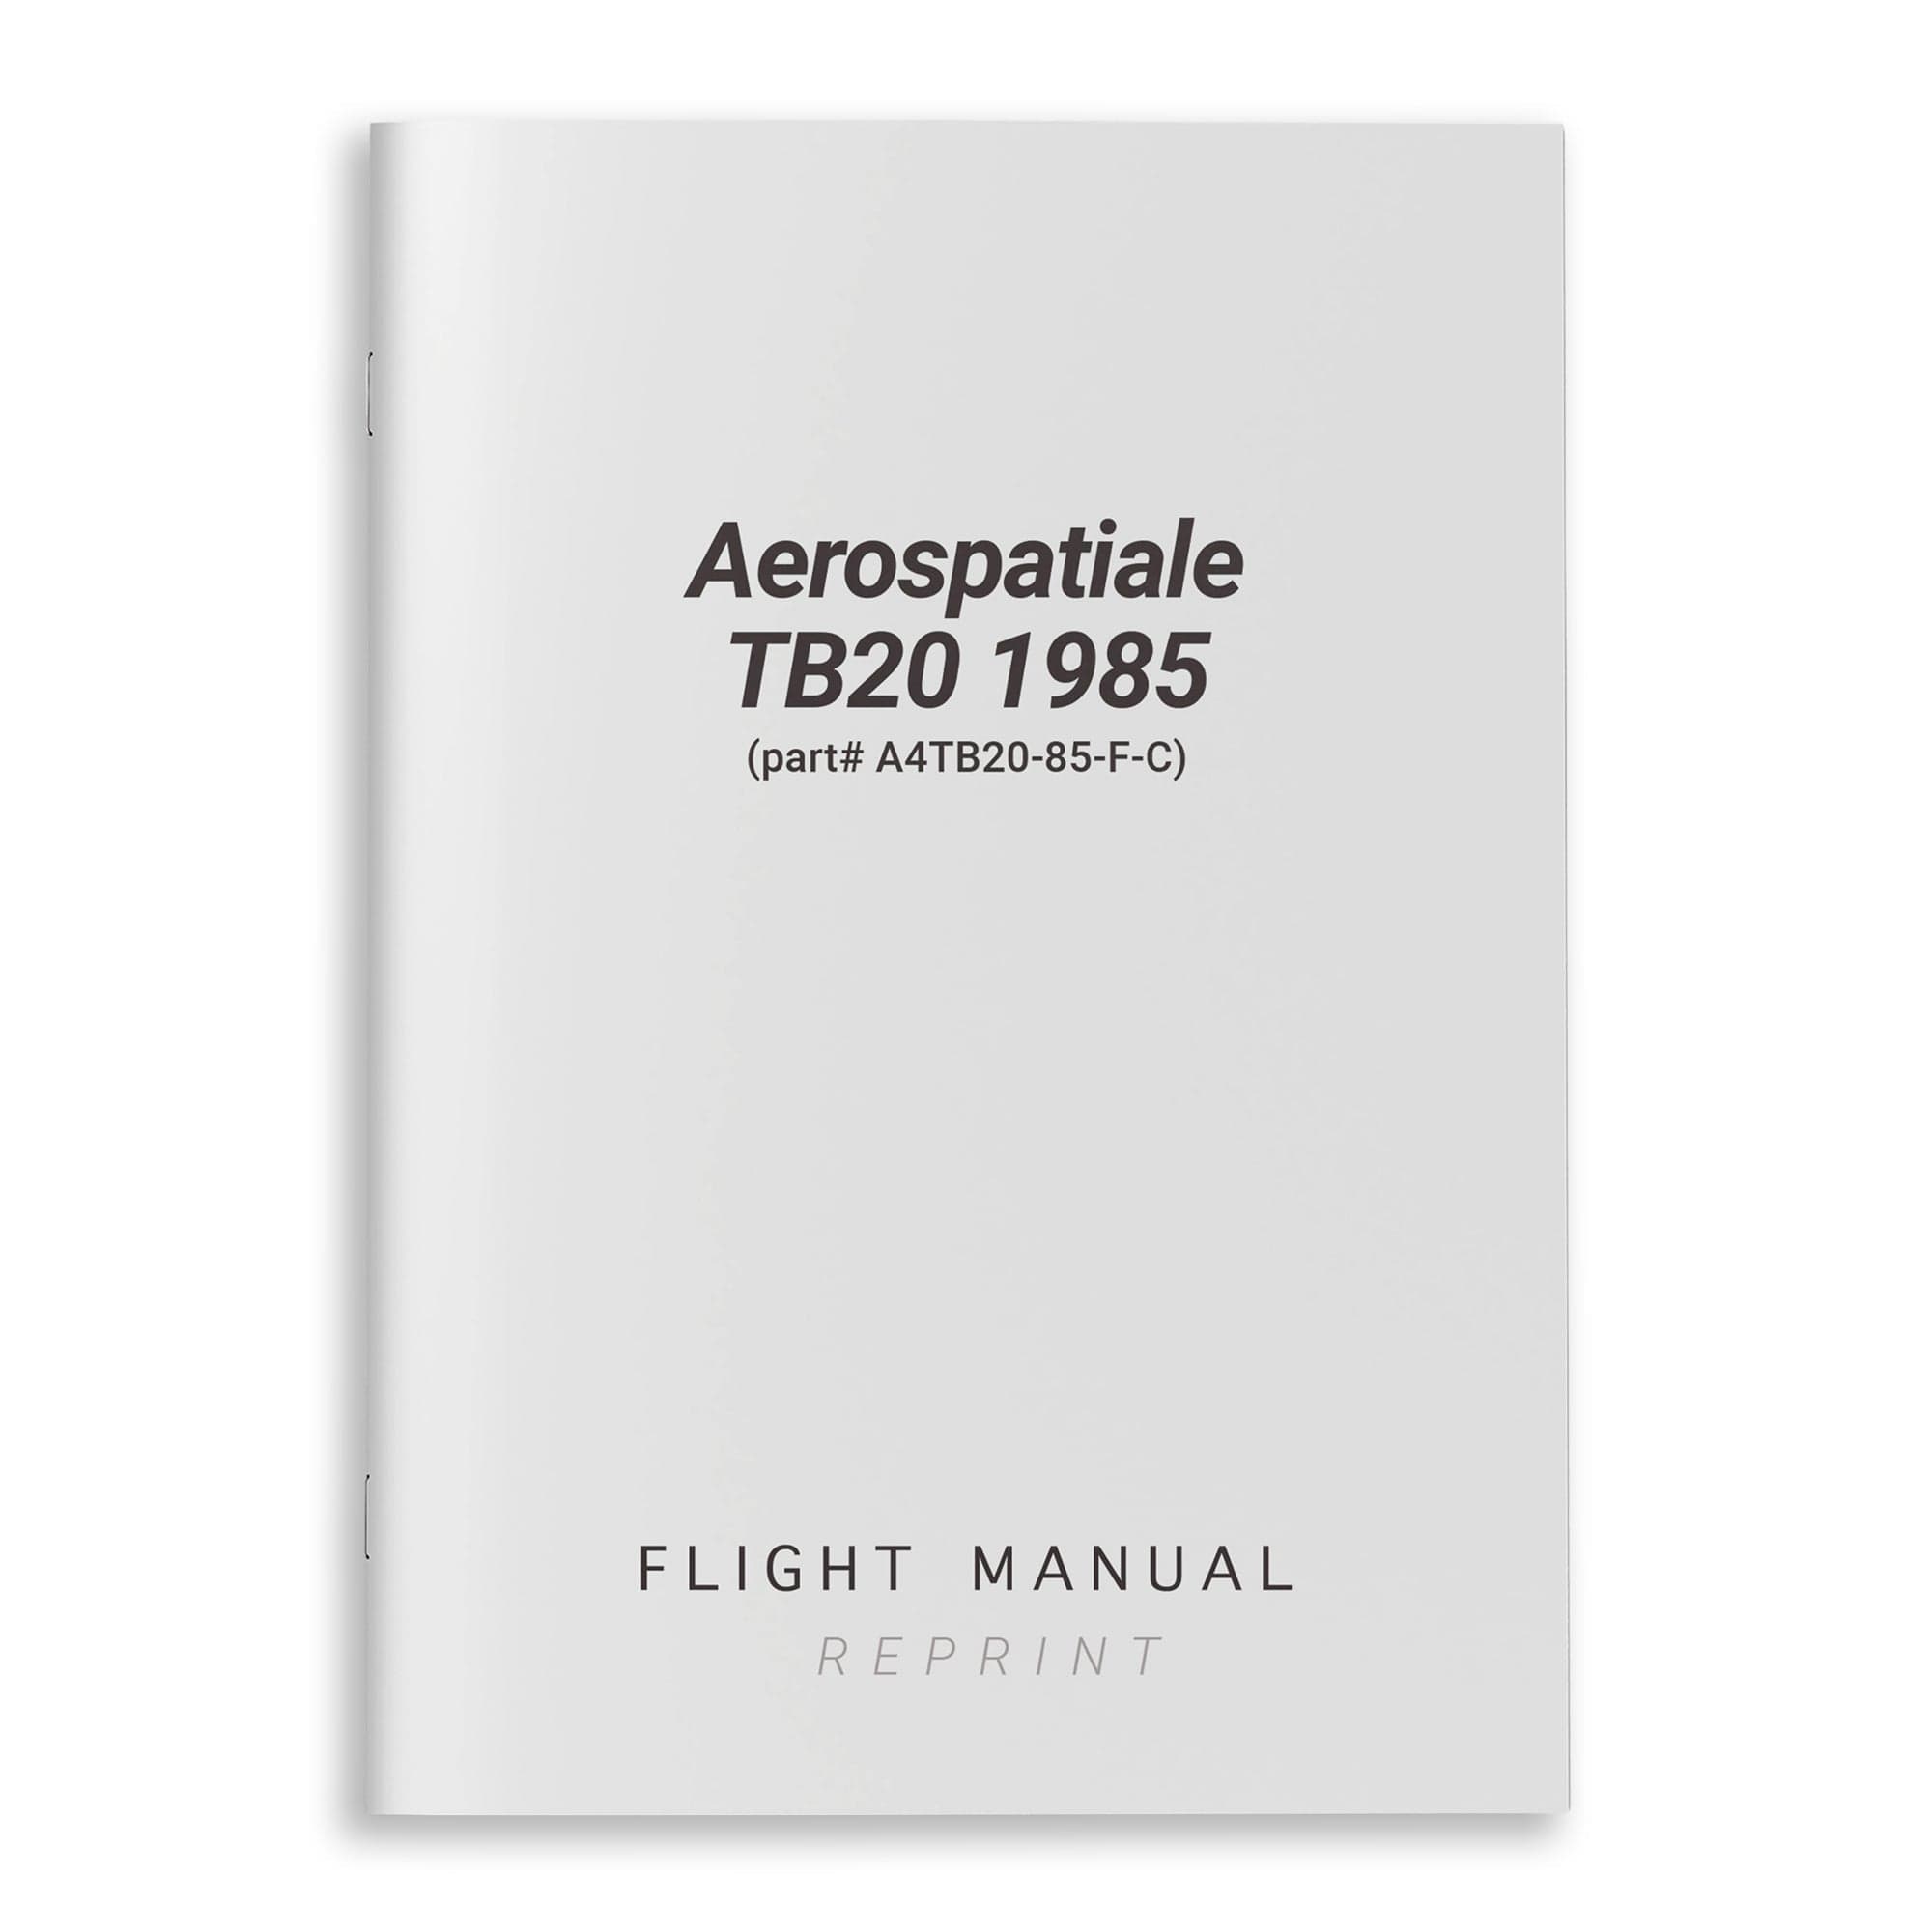 Aerospatiale TB20 1985 Flight Manual (part# A4TB20-85-F-C)